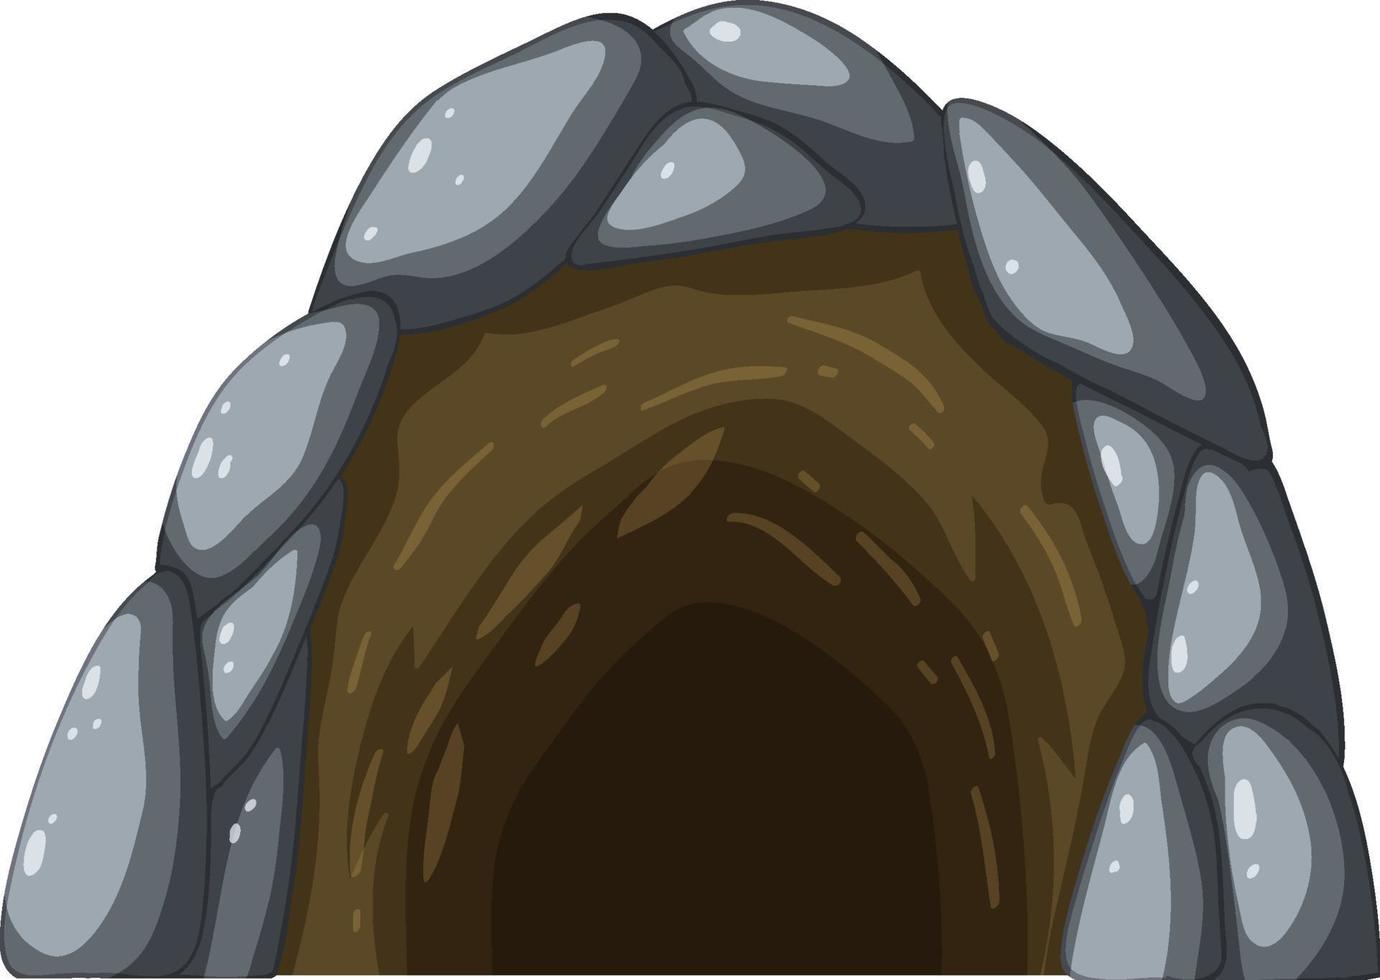 grotta di pietra in stile cartone animato vettore